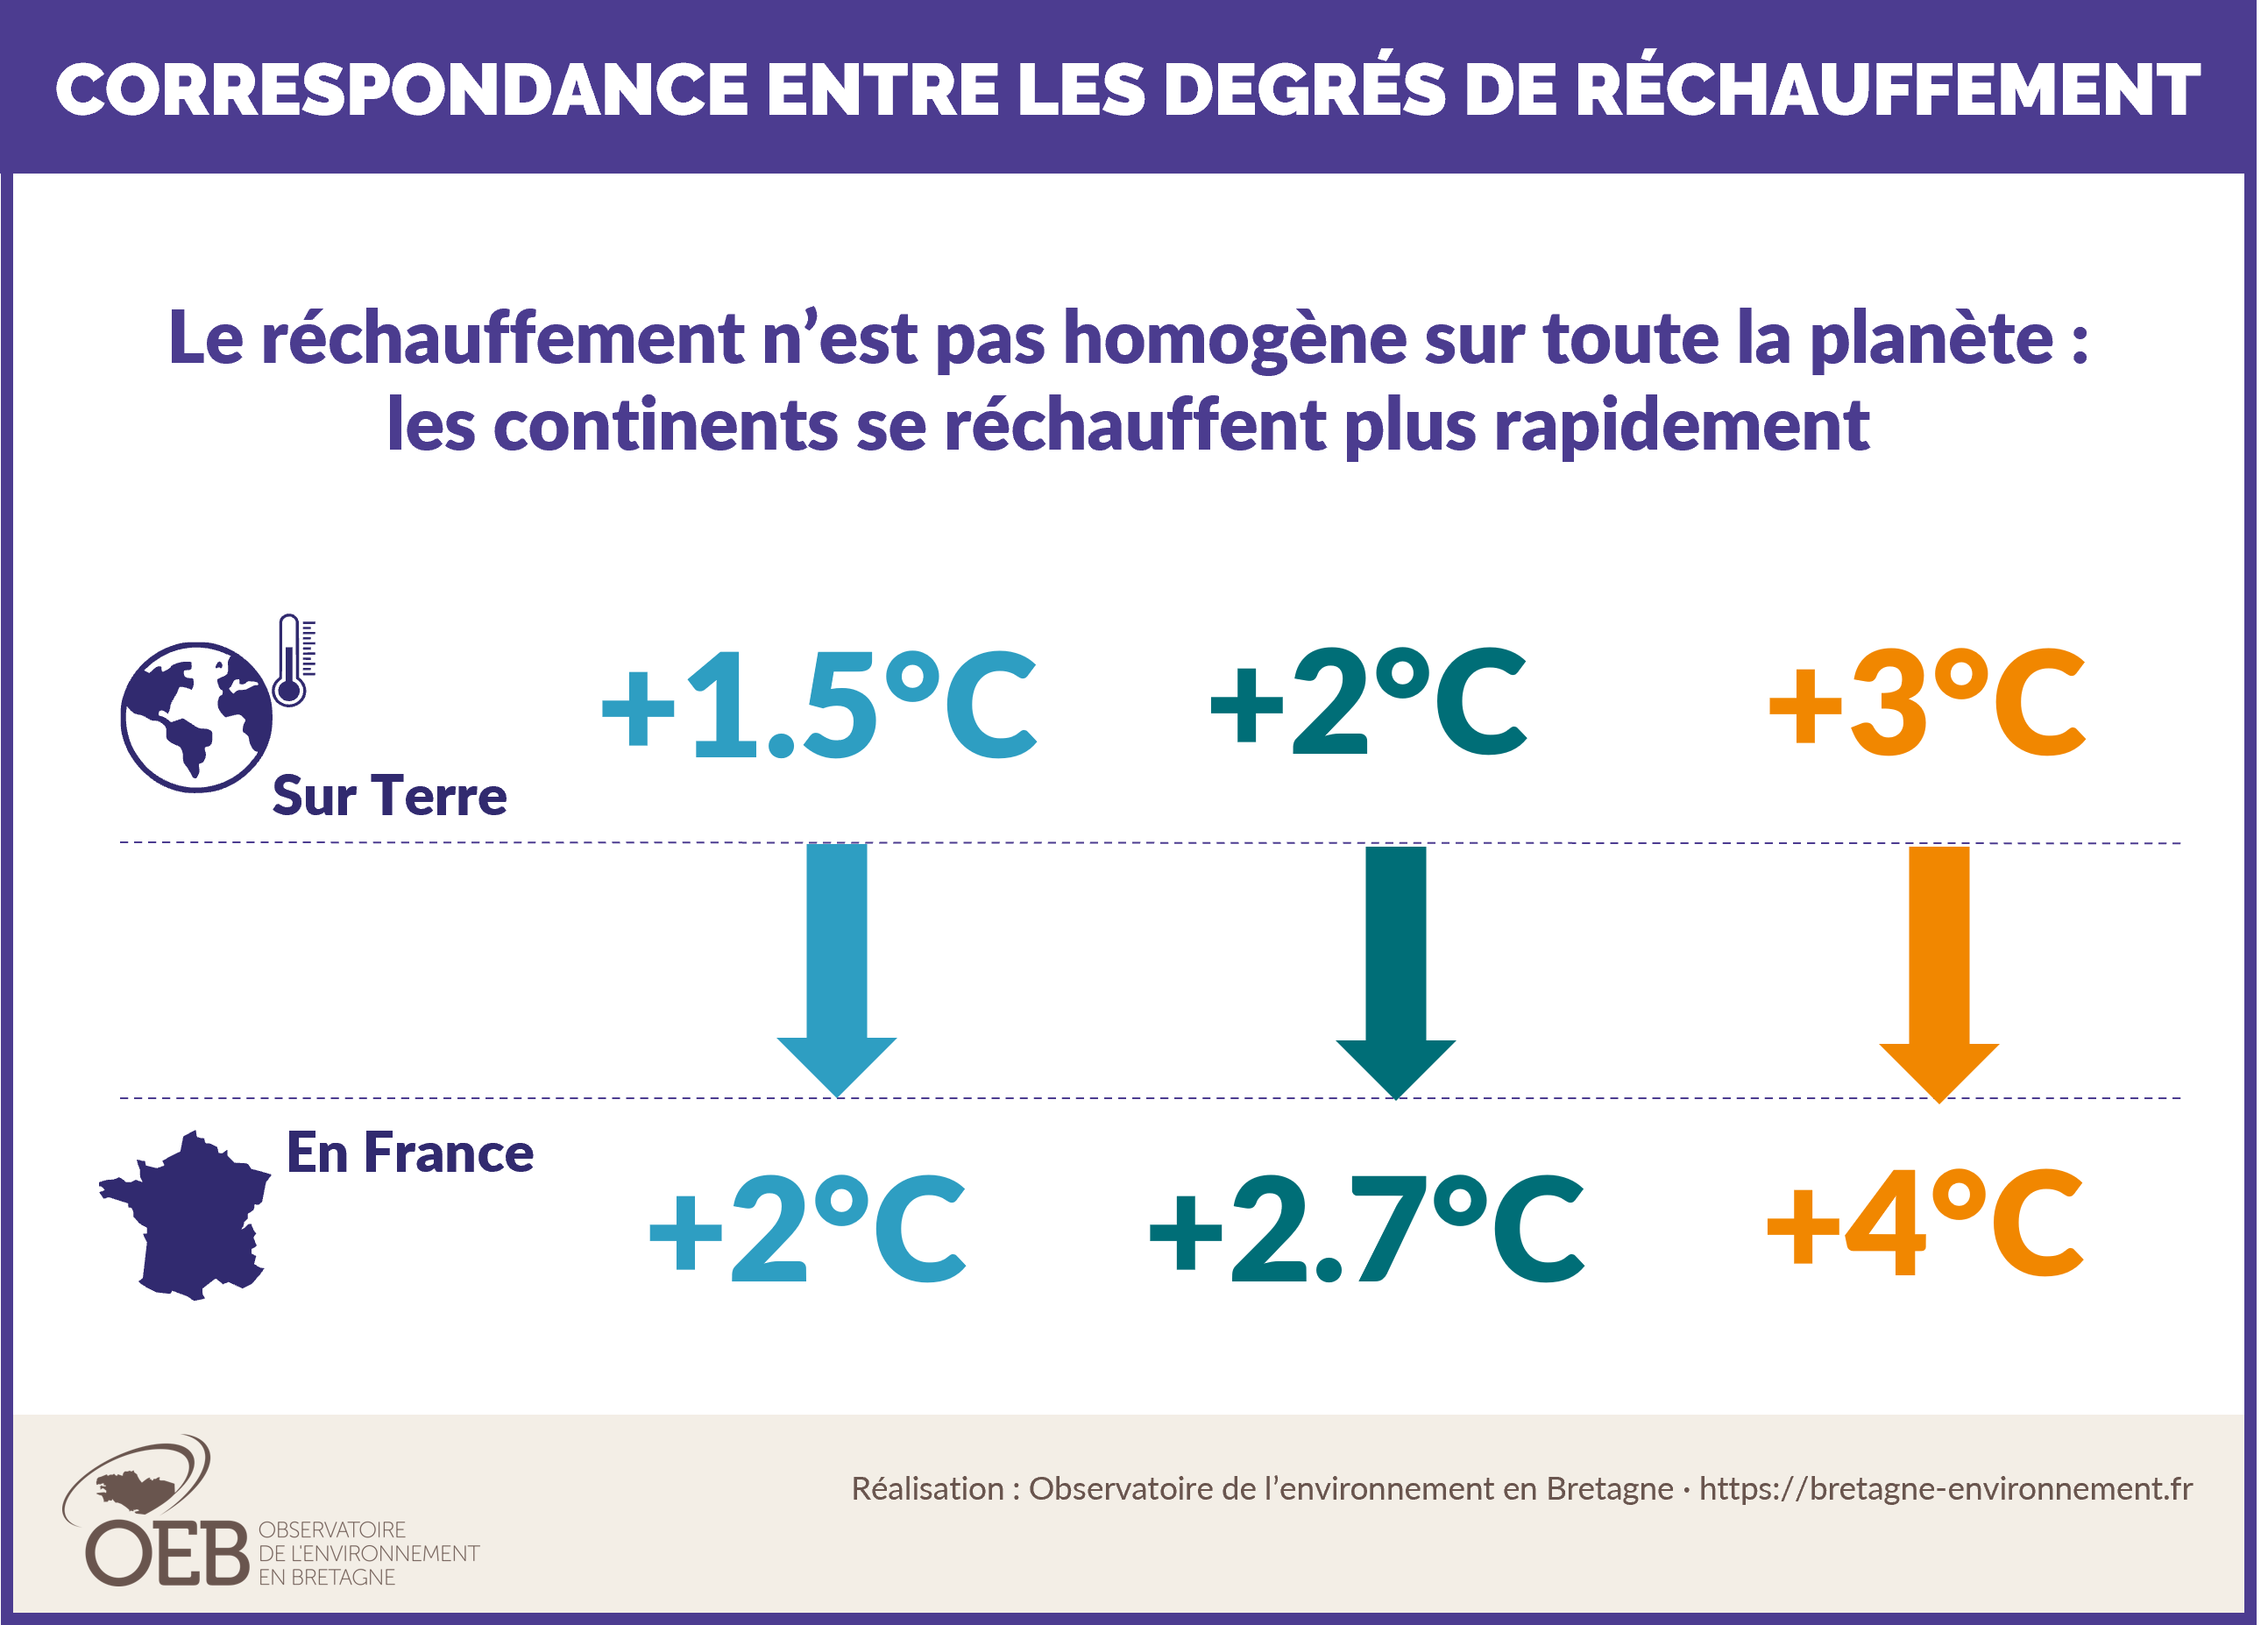 FAQ degrés de réchauffement globaux et en France